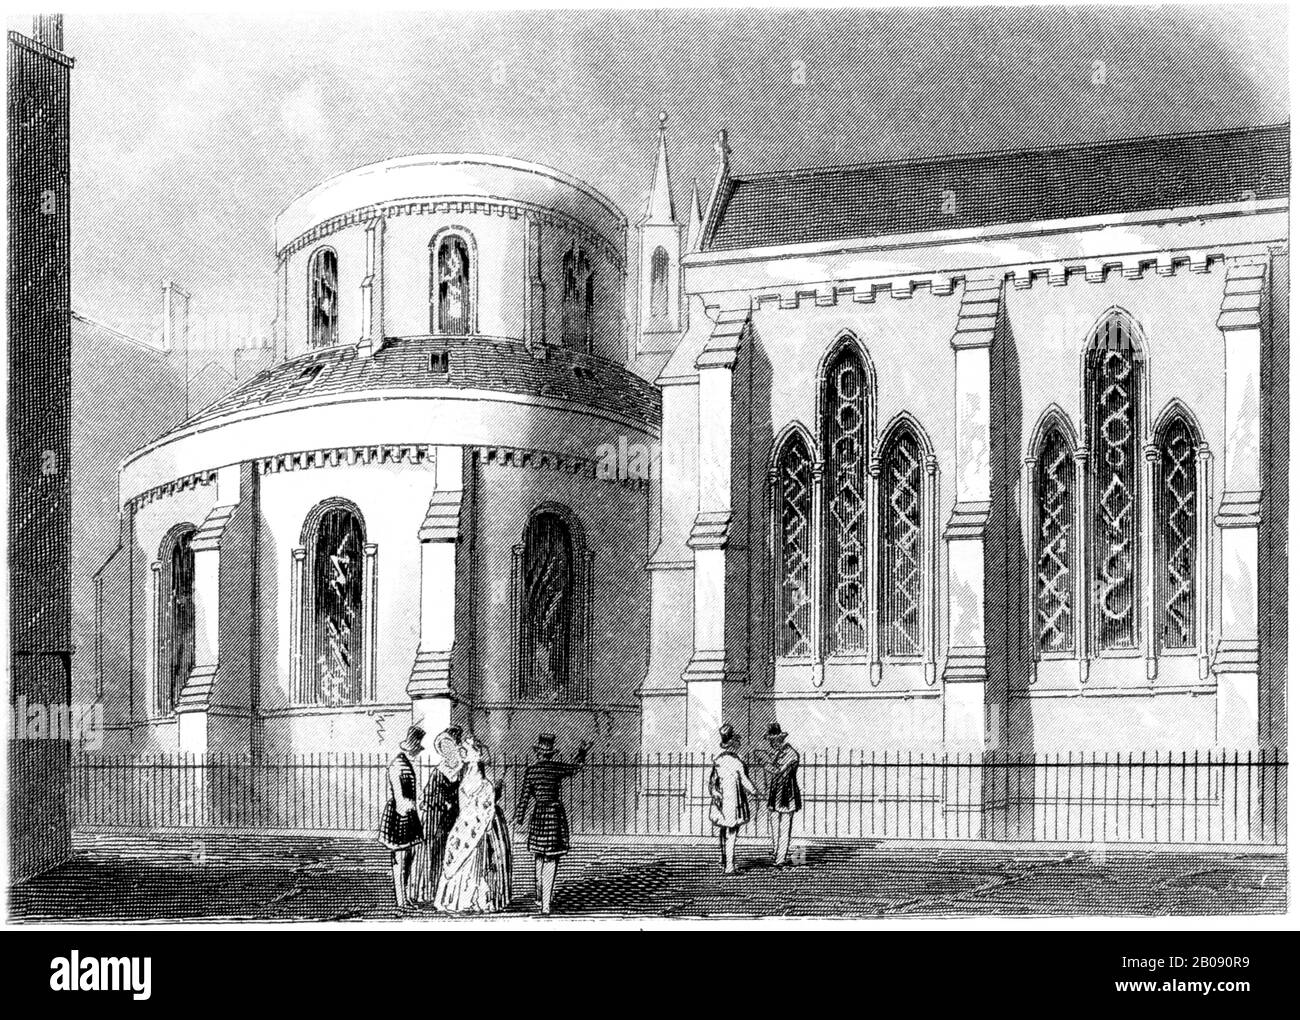 Eine Gravur der Temple Church, London, gescannte in hoher Auflösung aus einem Buch, das im Jahr 1851 gedruckt wurde. Es wird angenommen, dass dieses Bild frei von allen Urheberrechten ist. Stockfoto